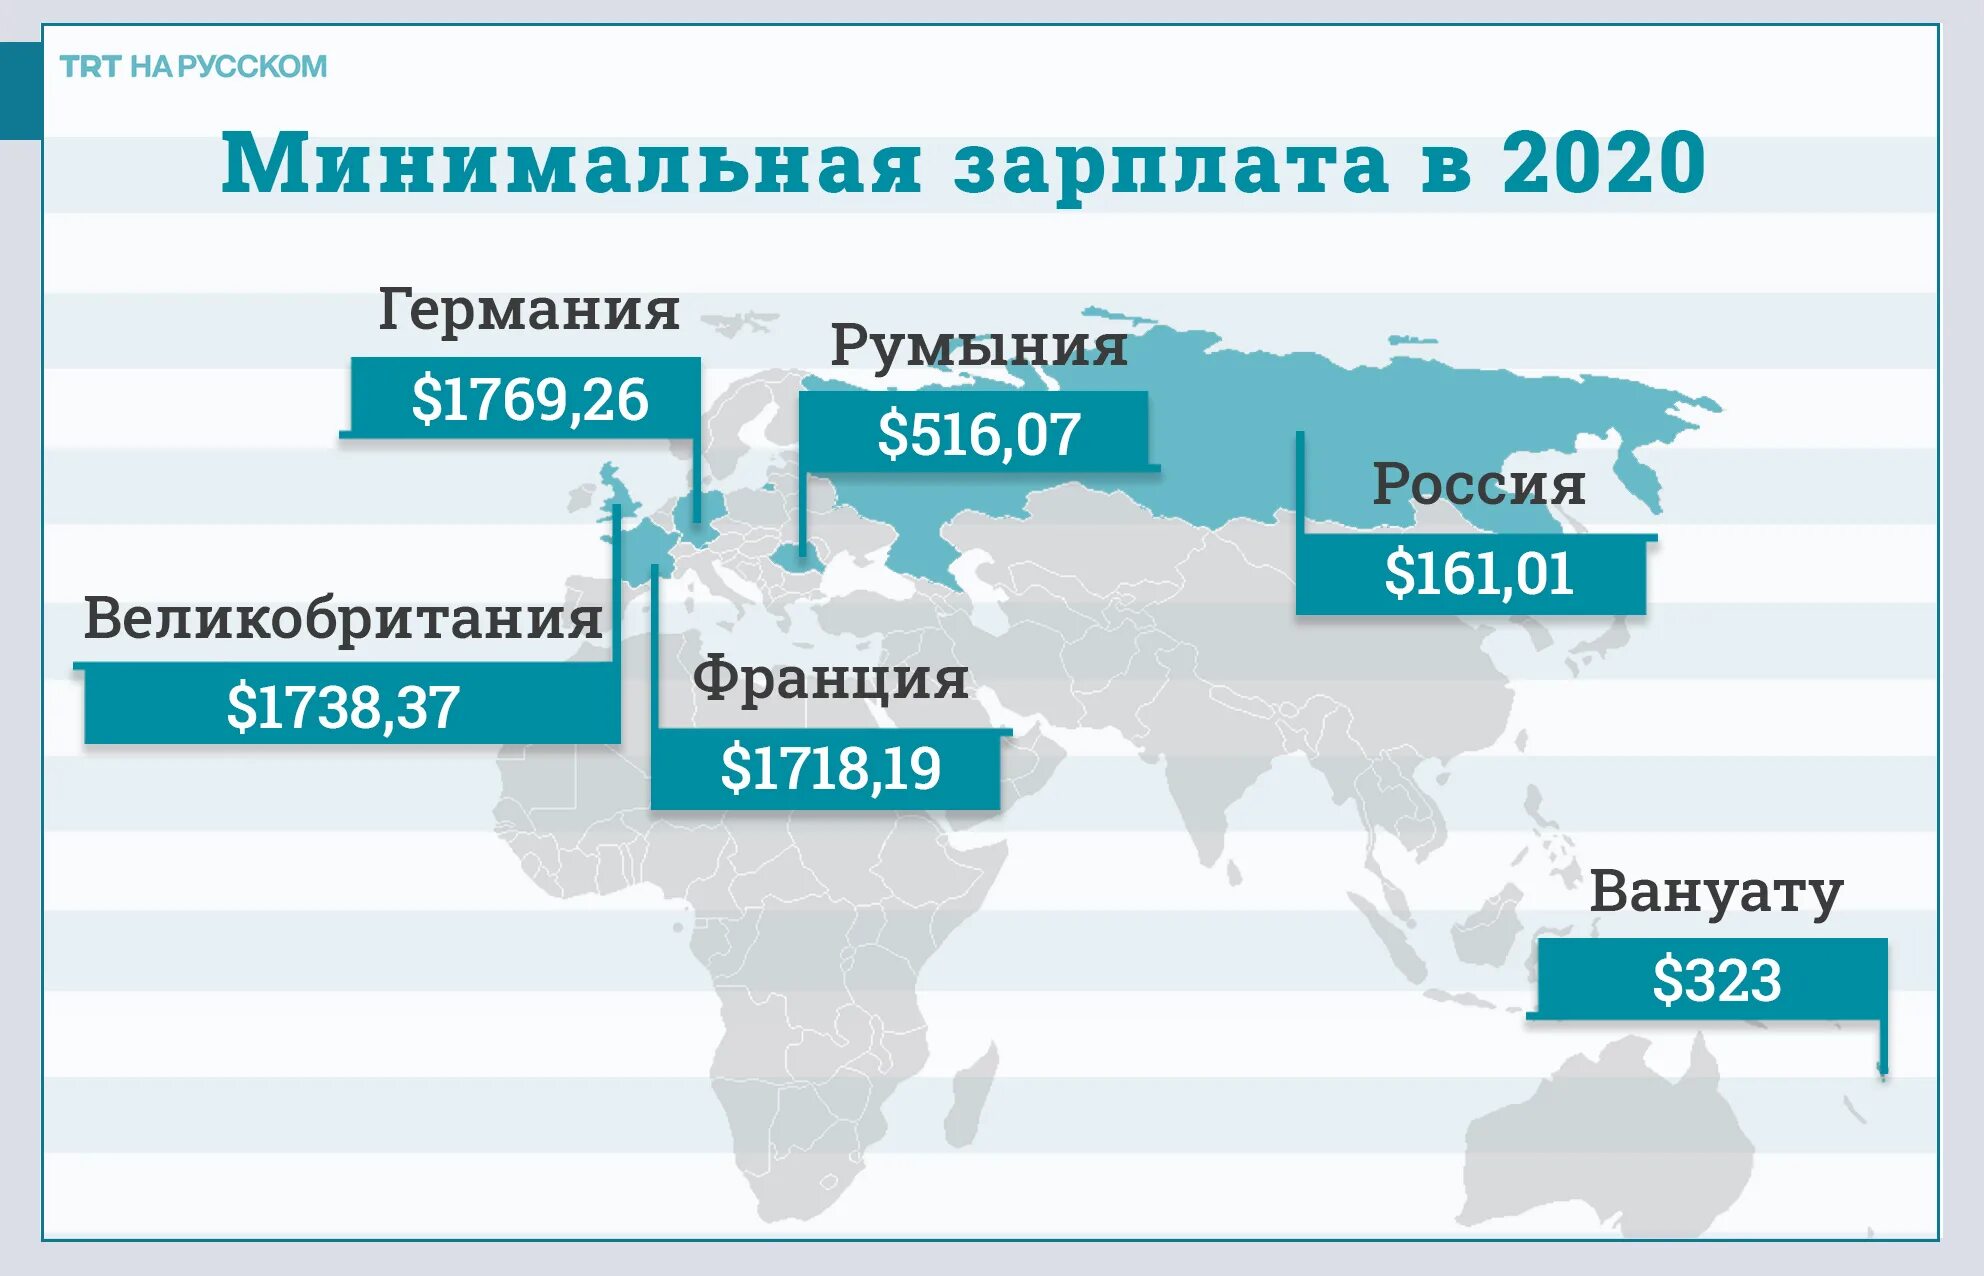 Б л в 2020. Средняя зарплата в РФ 2021. Средняя зарплата в России в 2021 году. Среднемесячная заработная плата в РФ В 2021 году. Минимальная заработная плата в 2021 году в России.